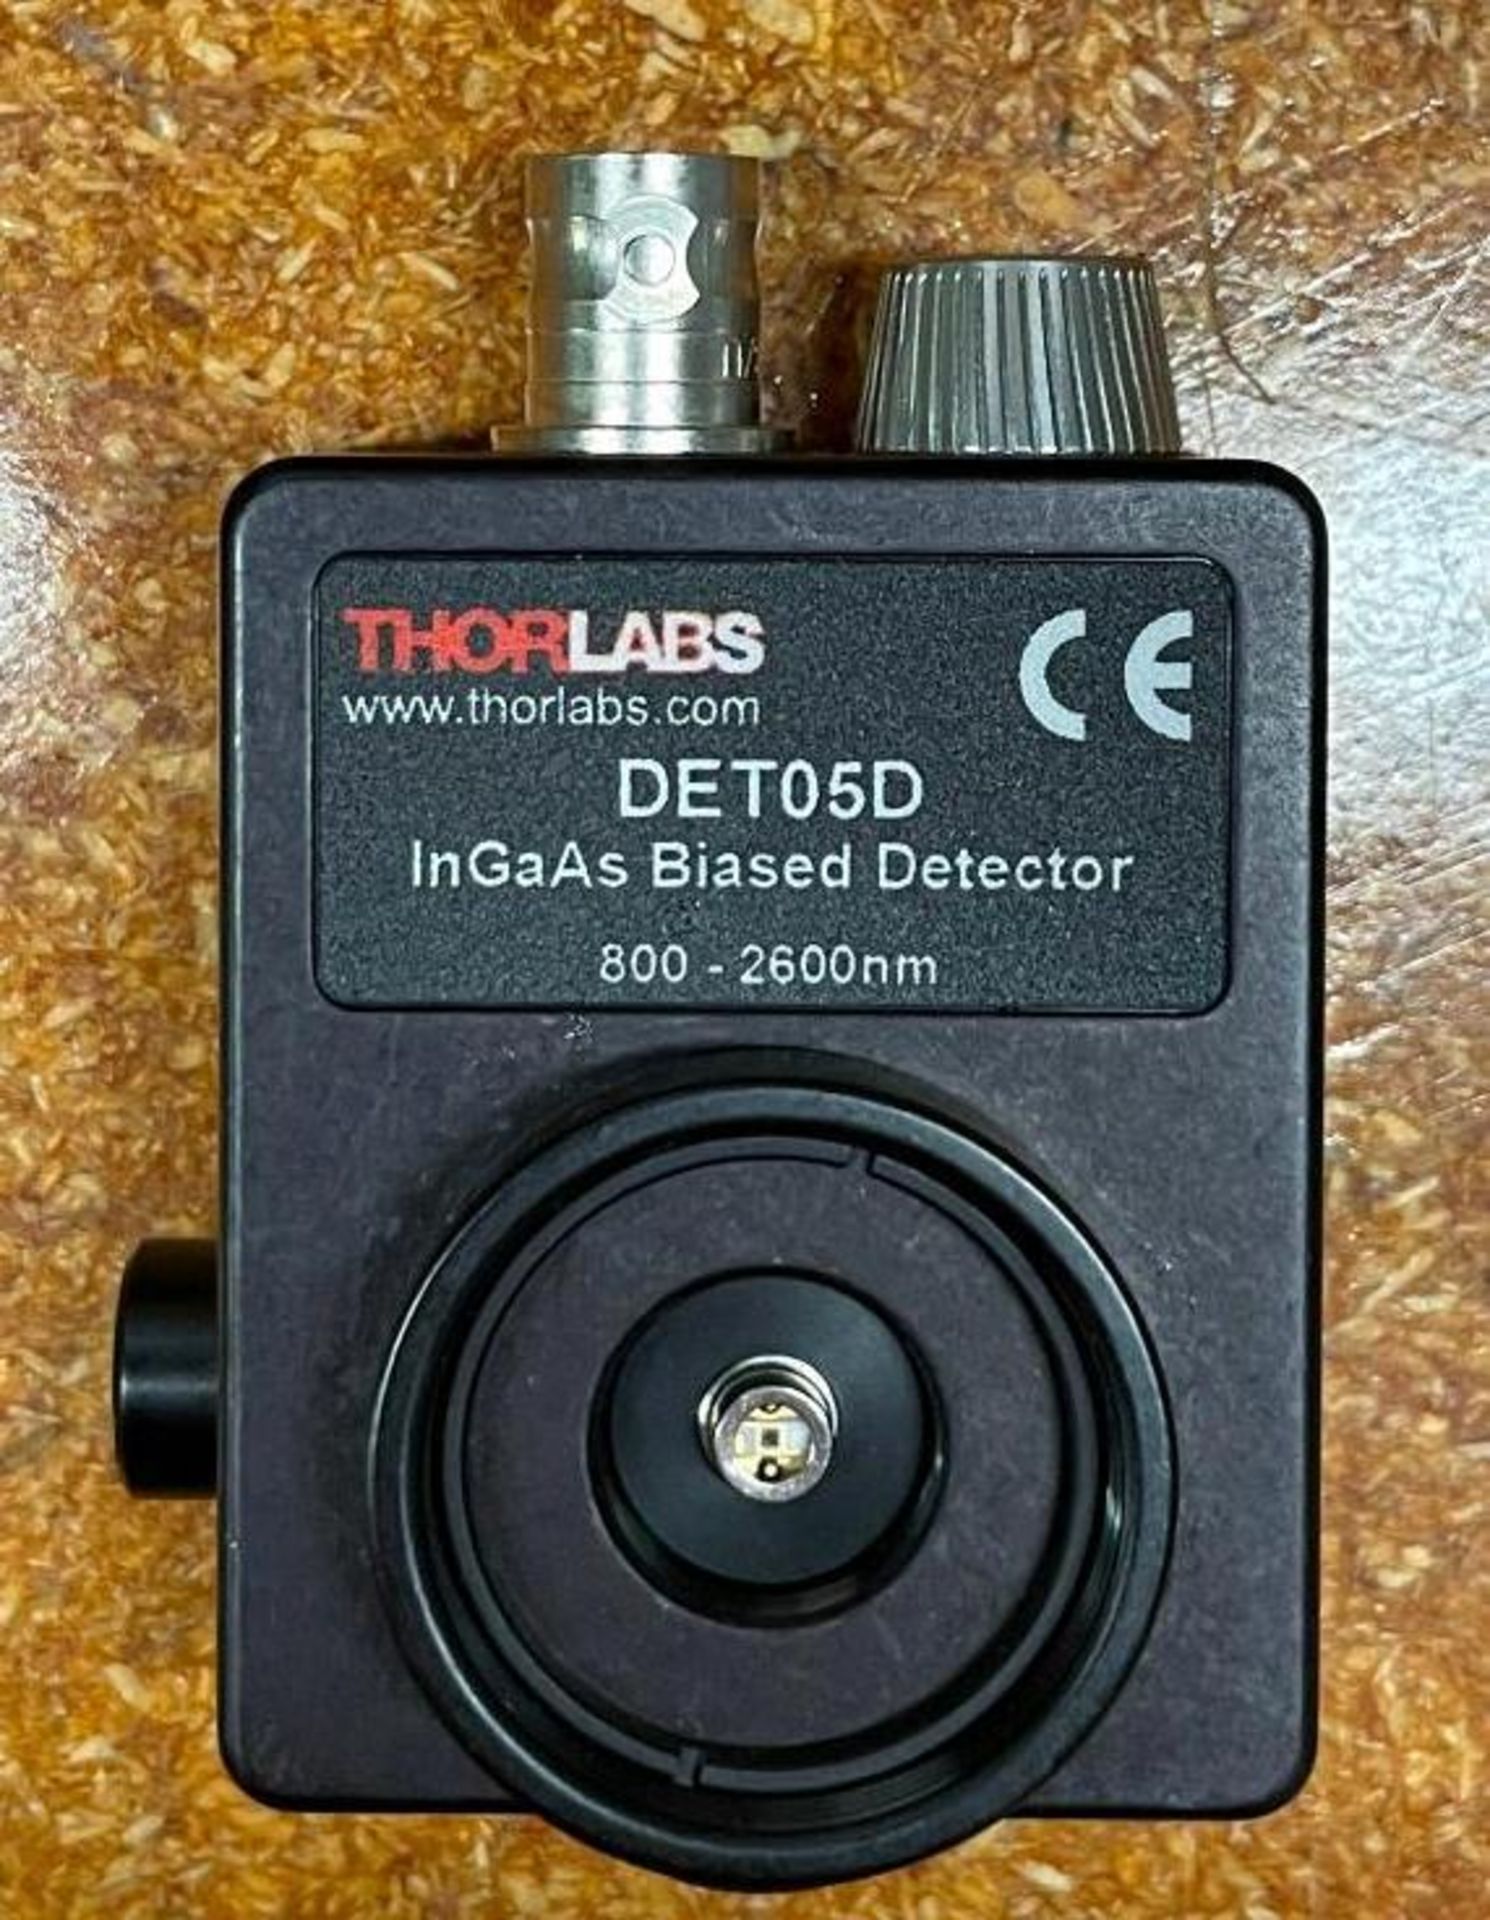 NIR PHOTODETECTOR BRAND/MODEL: THORLABS DET05D INFORMATION: InGaAs BIASED DETECTOR, 0.8-2.6mm RETAIL